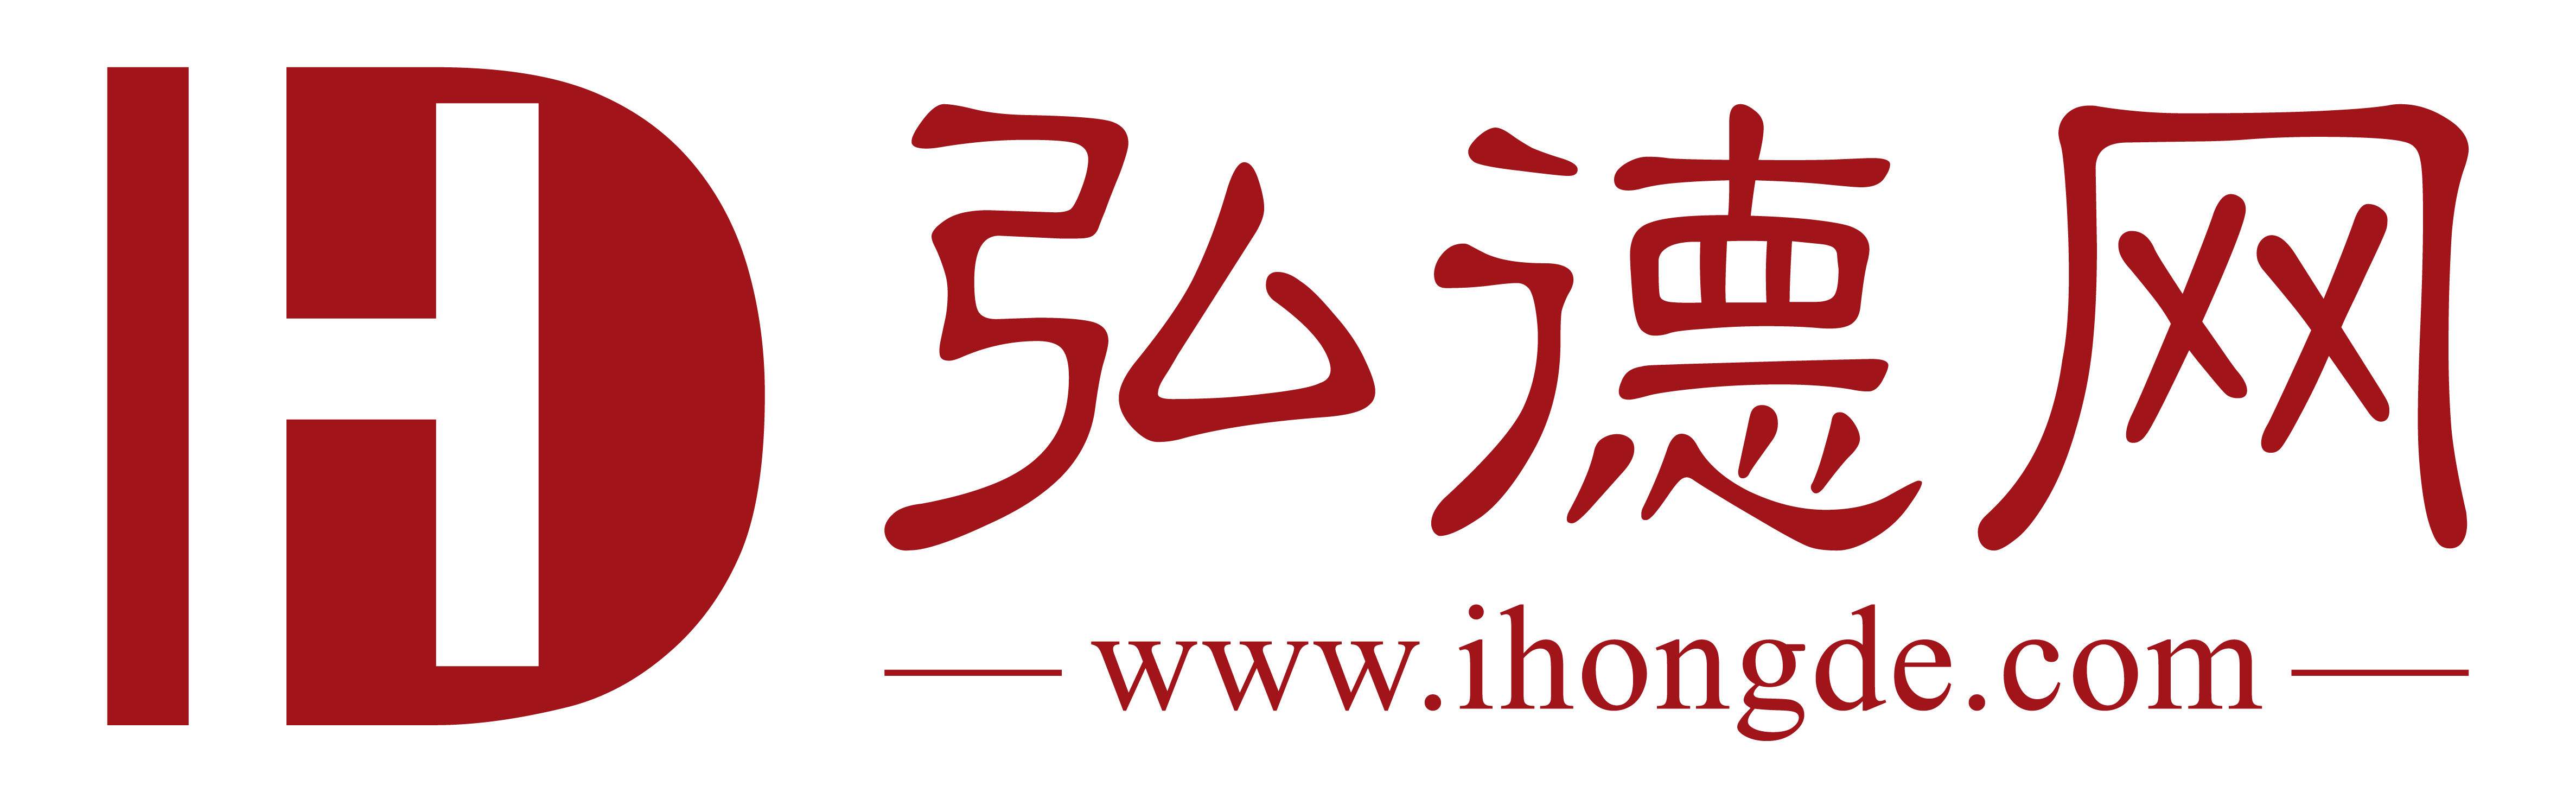 弘德logo带新网址.png